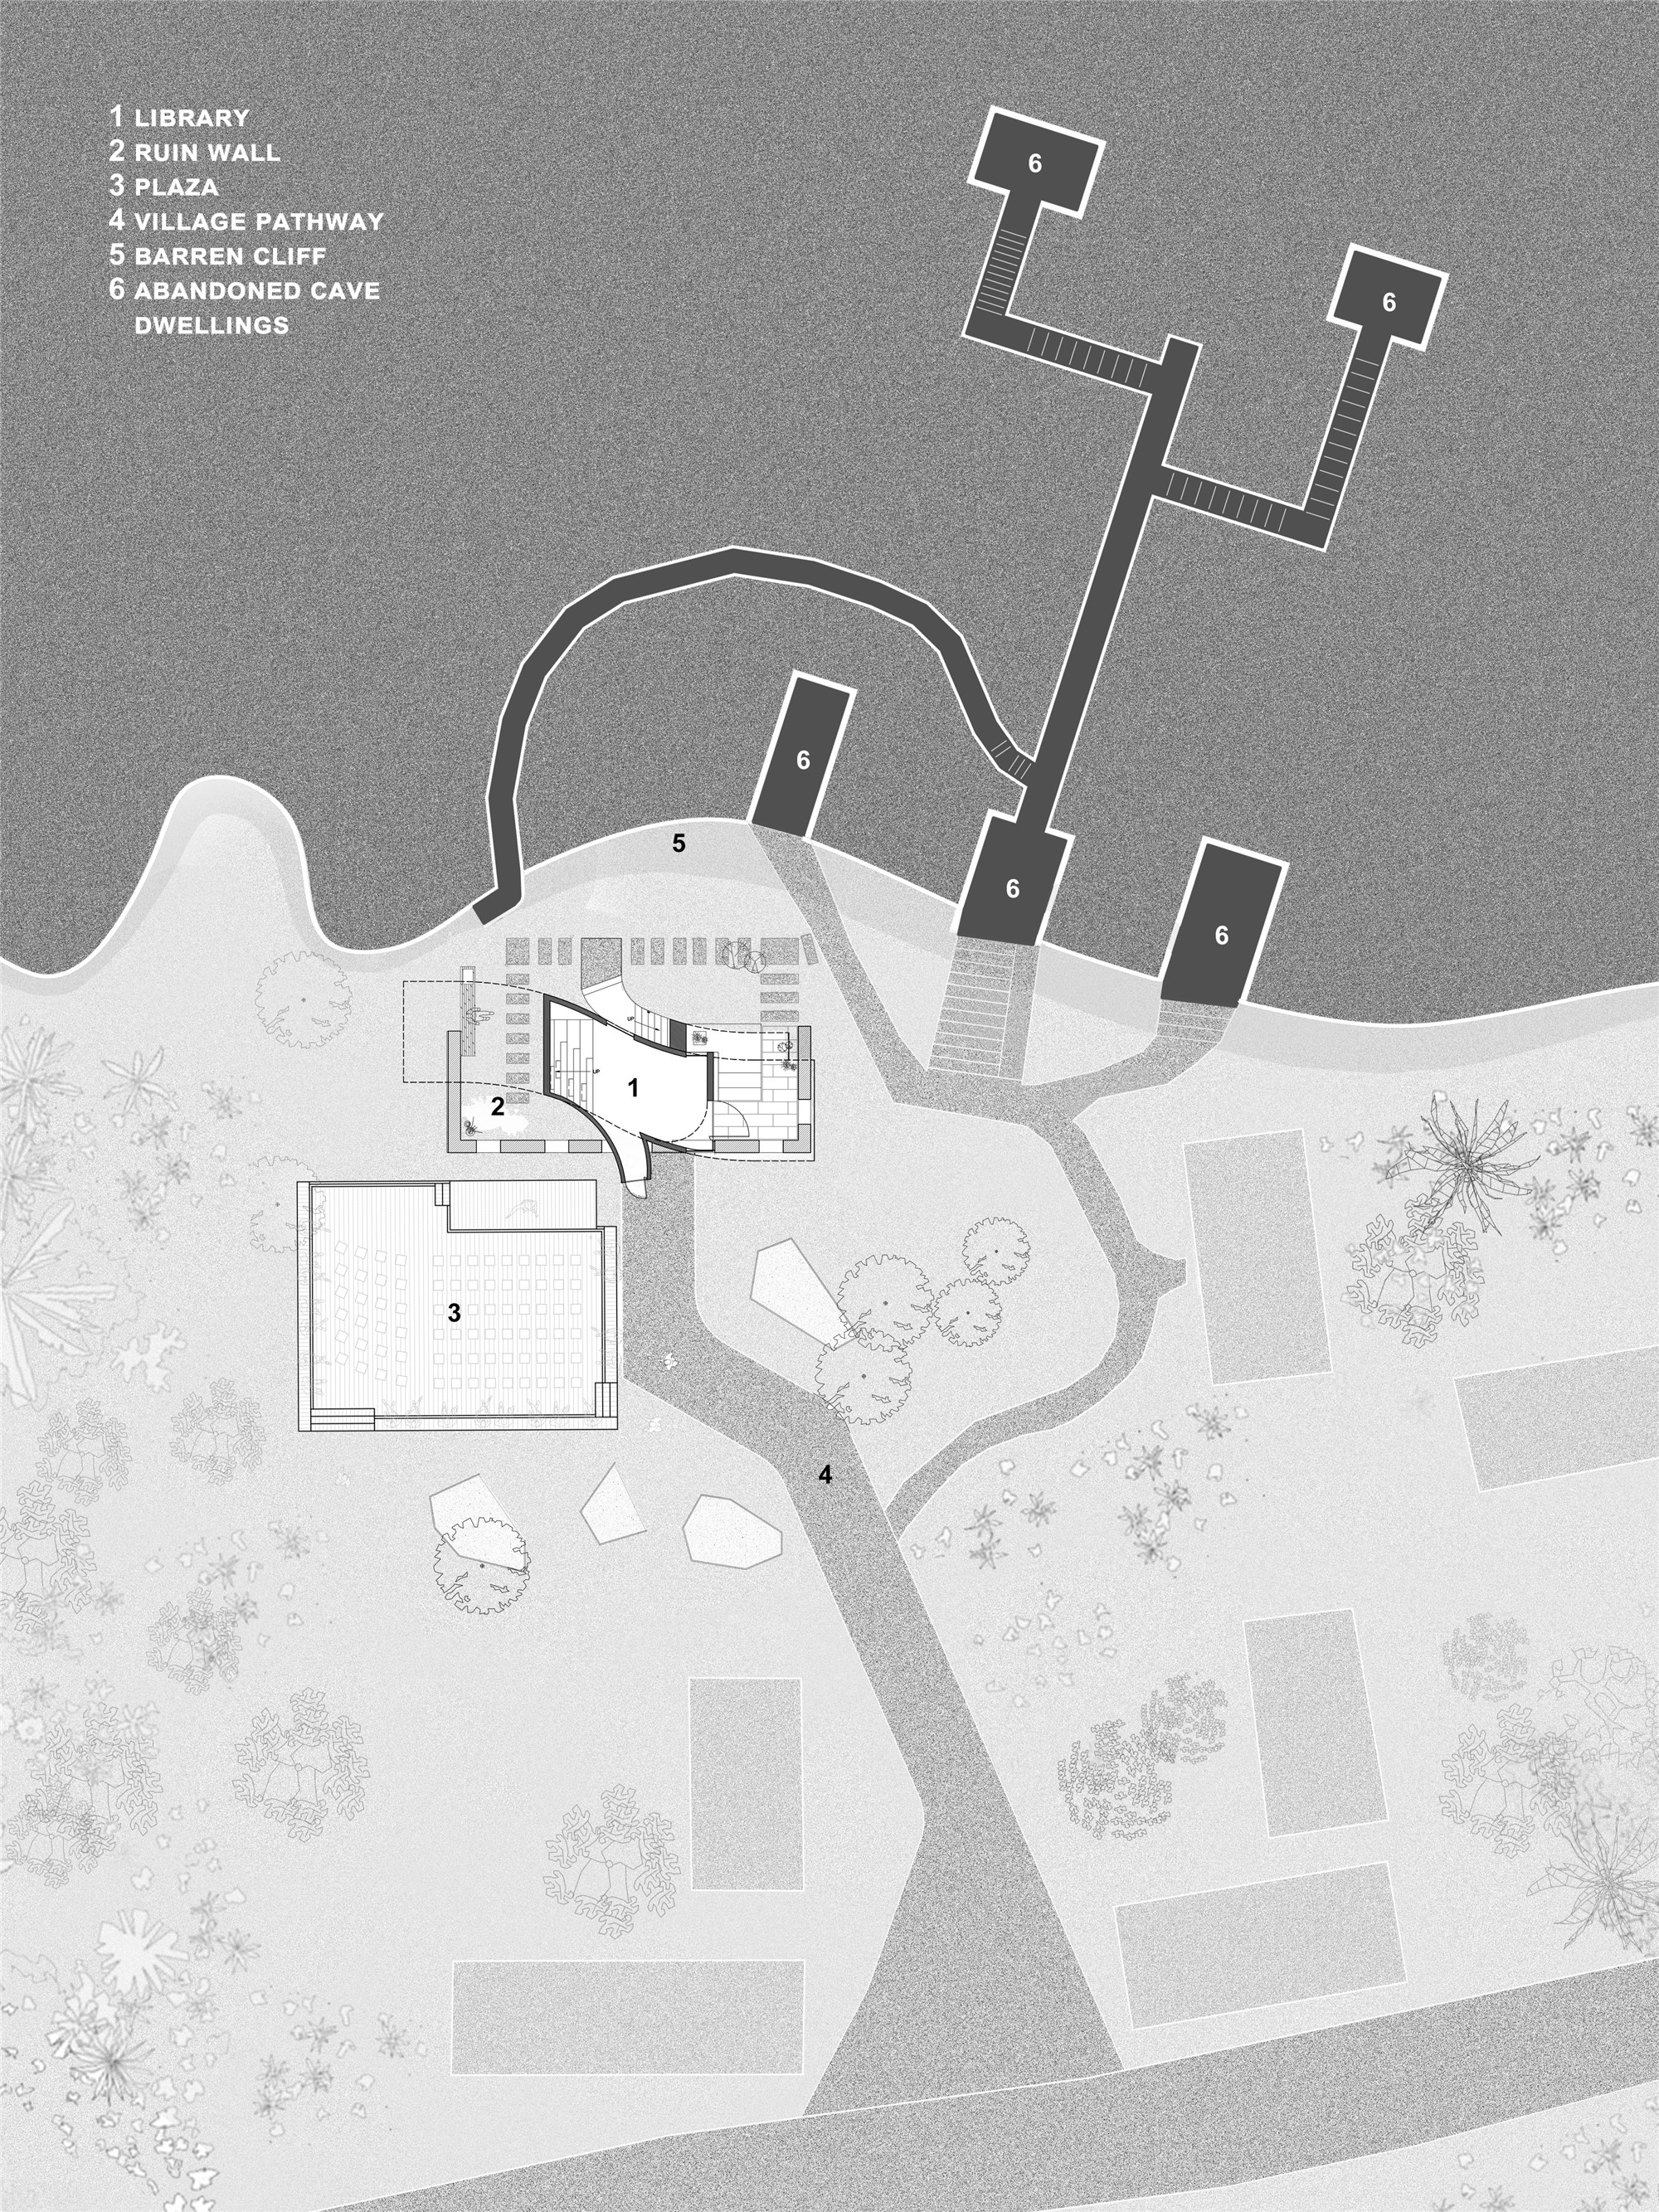 微建筑系列 II：废墟书屋 / 一树建筑工作室